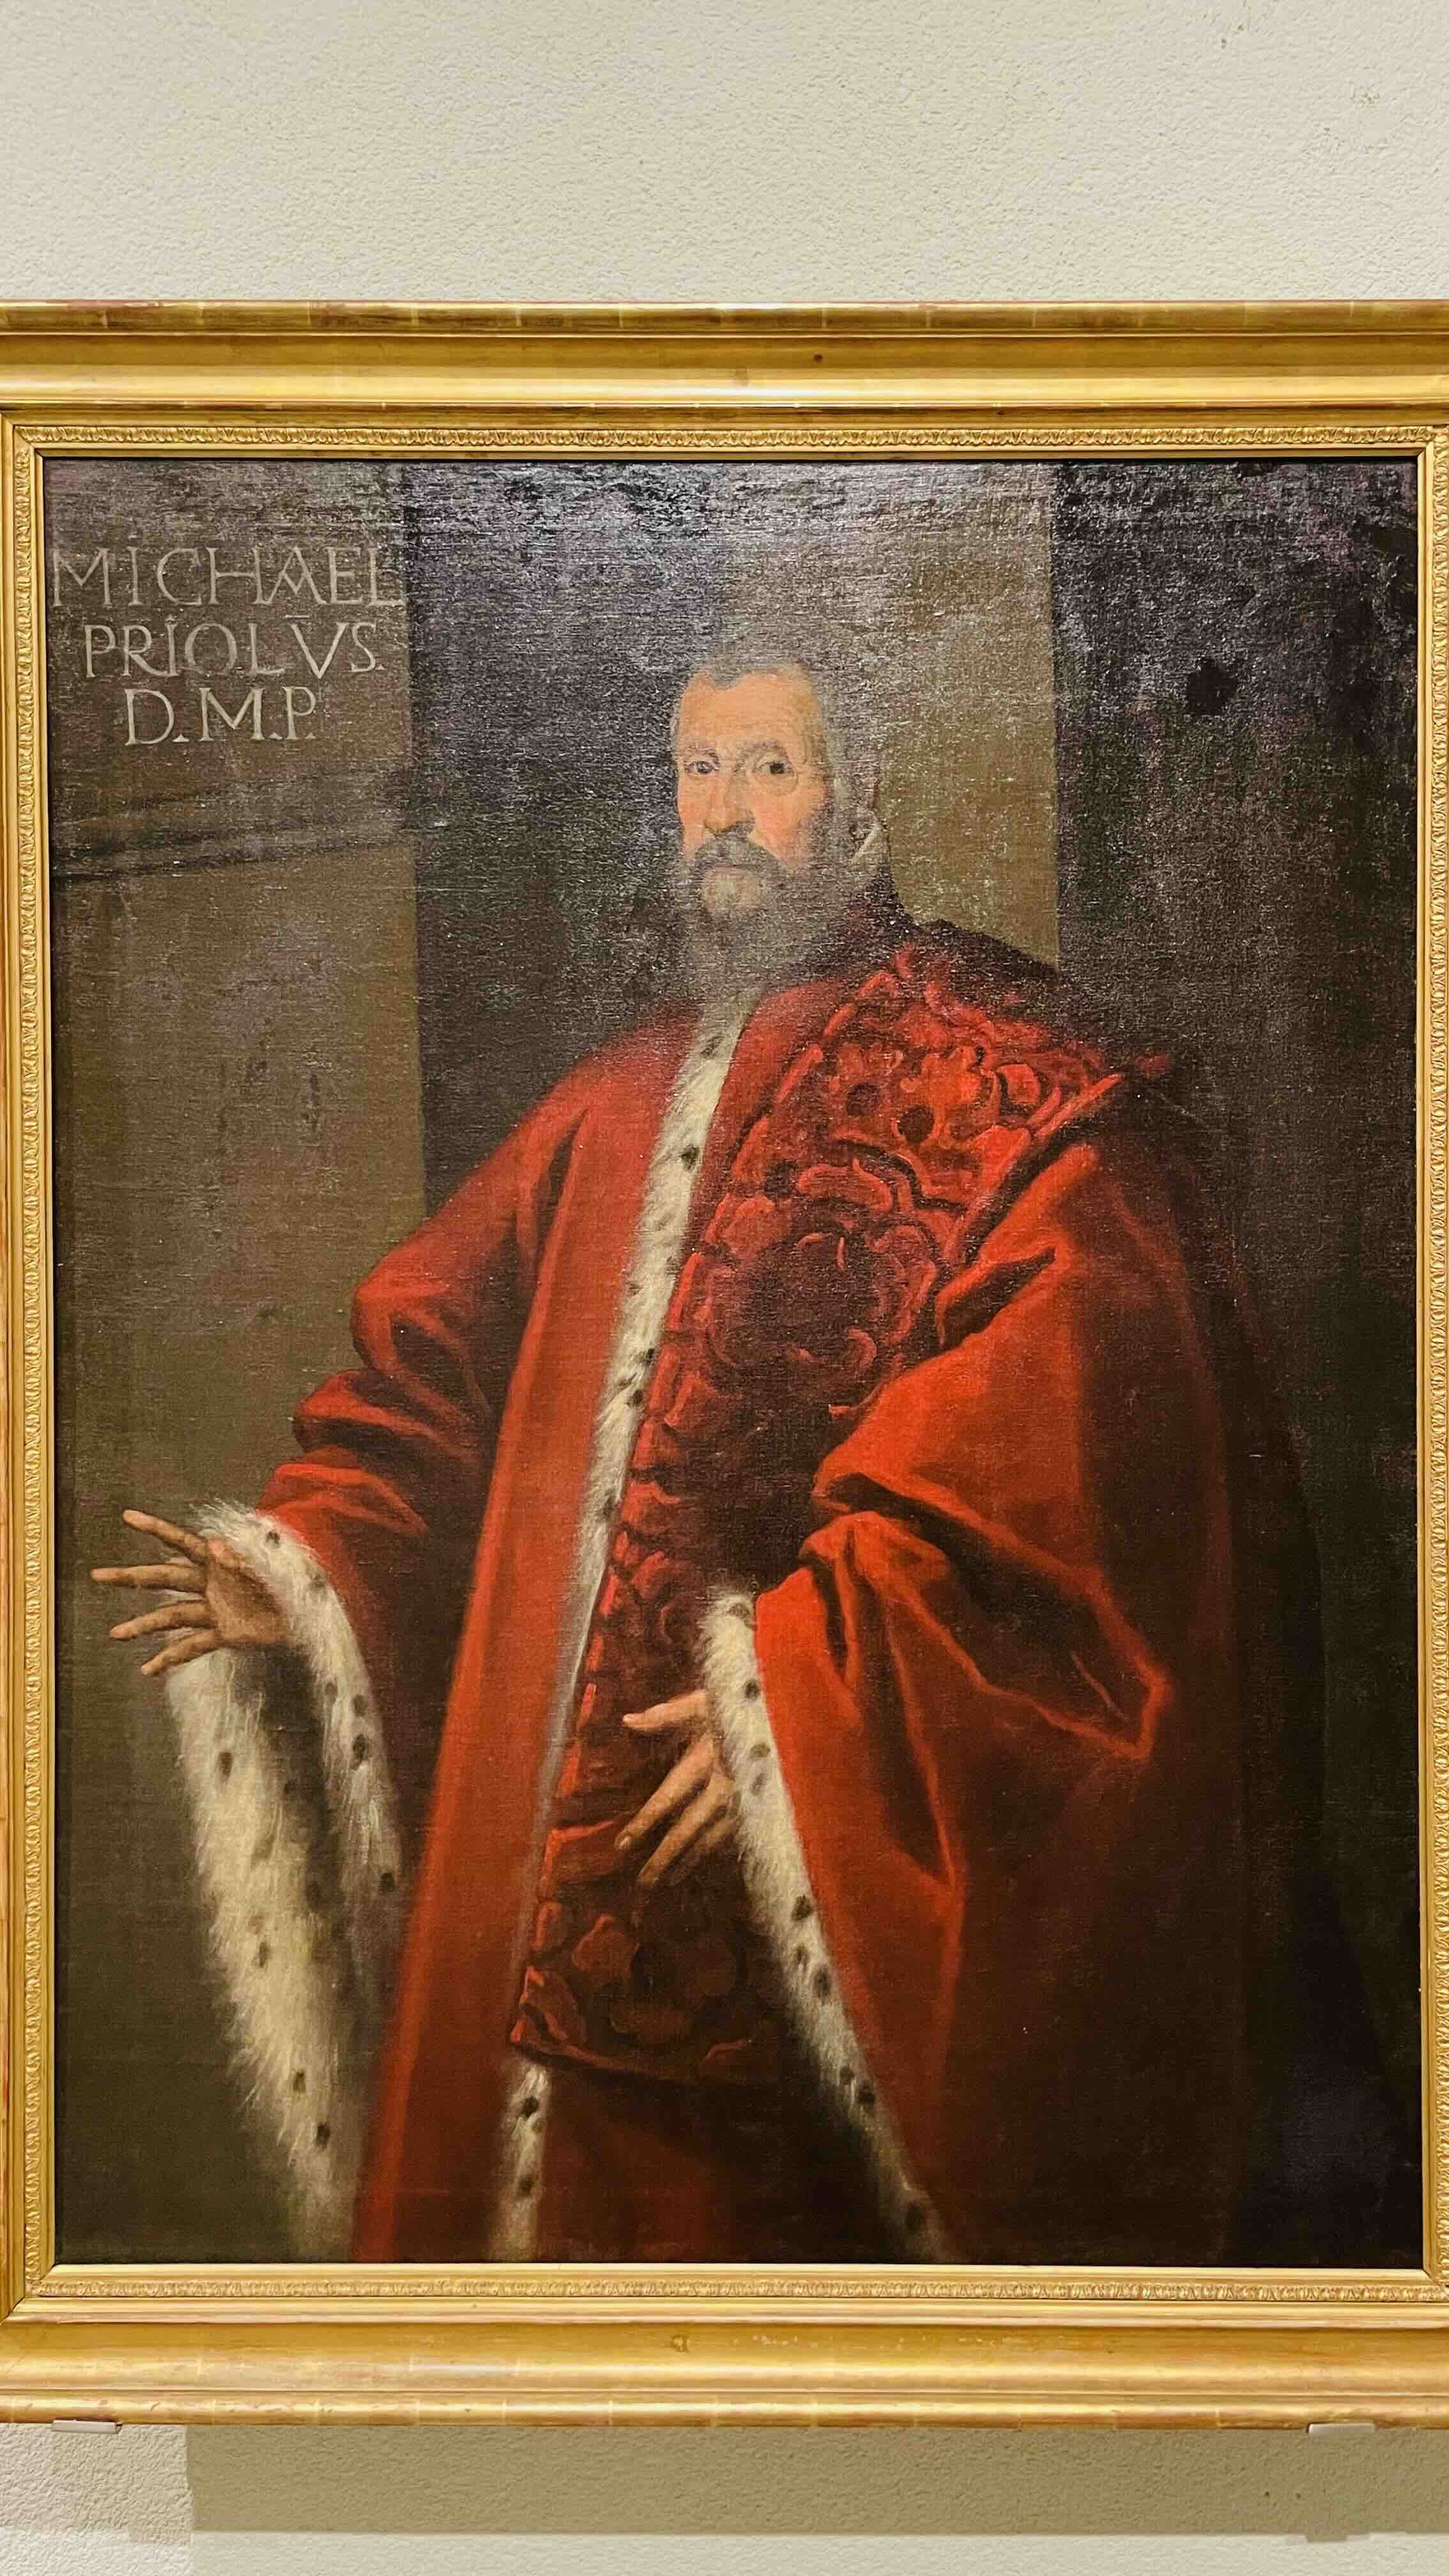 Tintoretto, Ritratto del Procuratore Michele Priuli